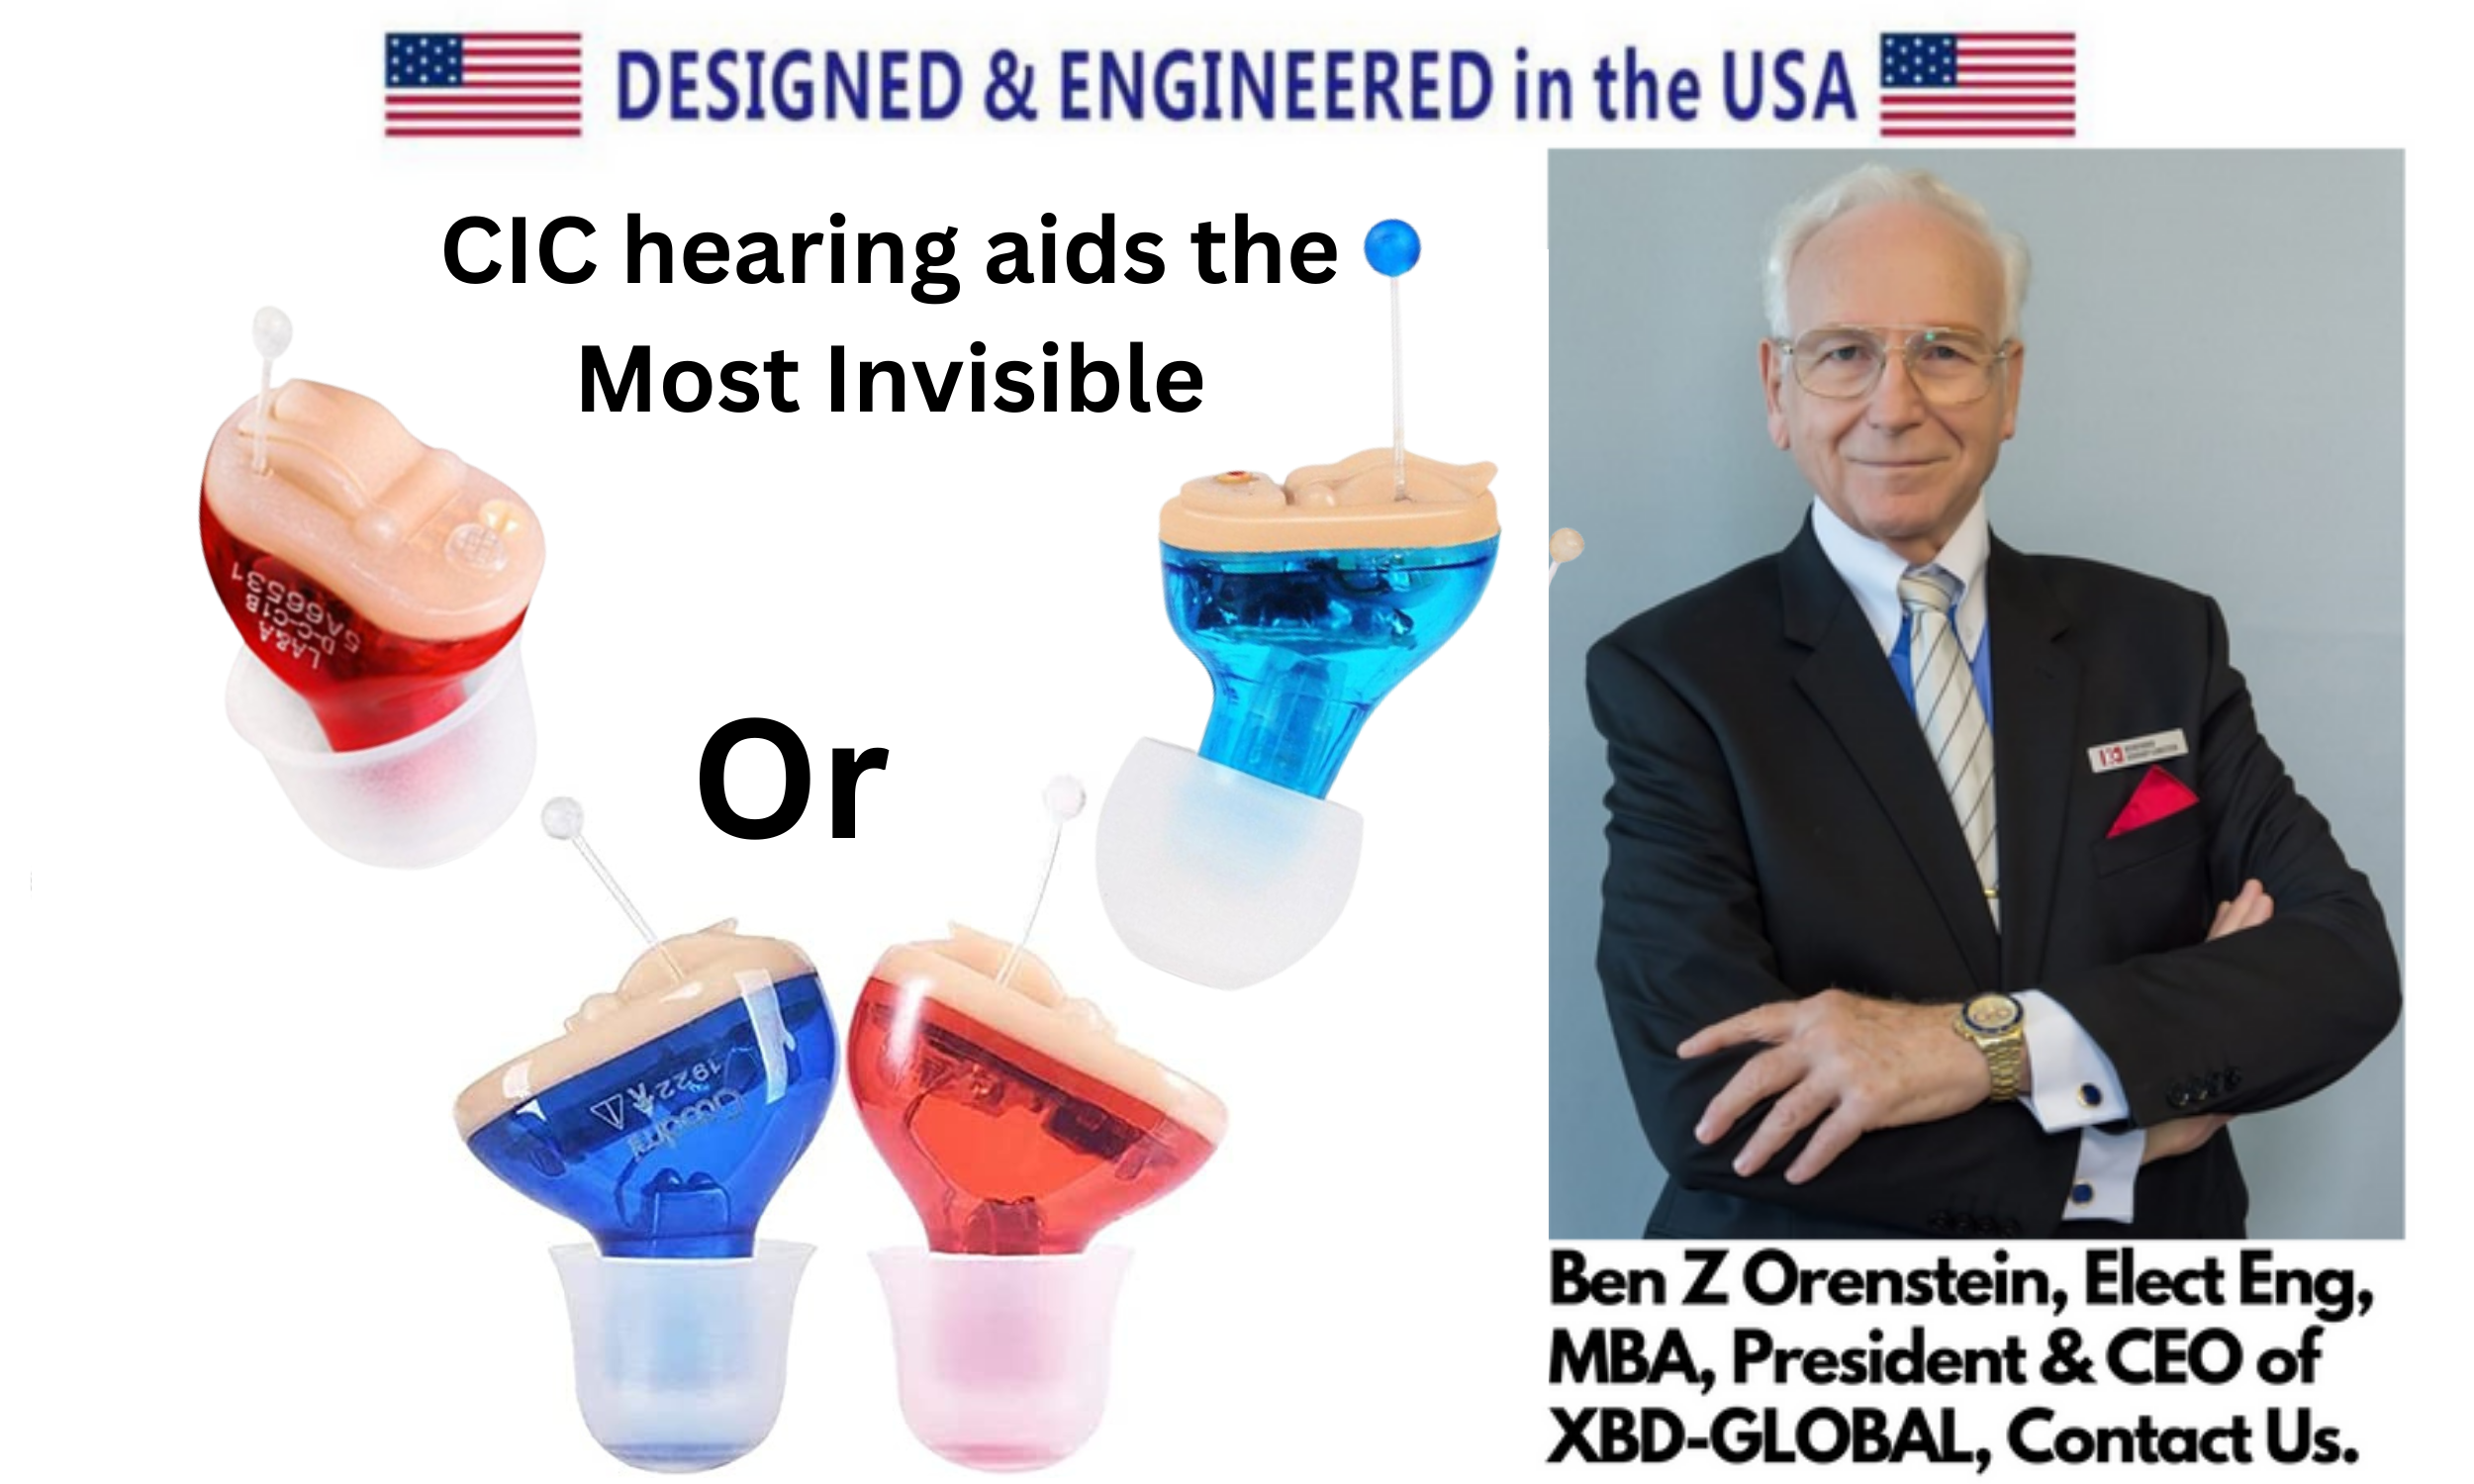 eEAR Digital Hearing Aid, CIC (Complete in Canal), eEar CIC-T25 Entworfen und konstruiert in den USA Für das rechte Ohr 79,88 $, für das linke Ohr 79,88 $ für ein Paar (rechts + links) = 149,88 $